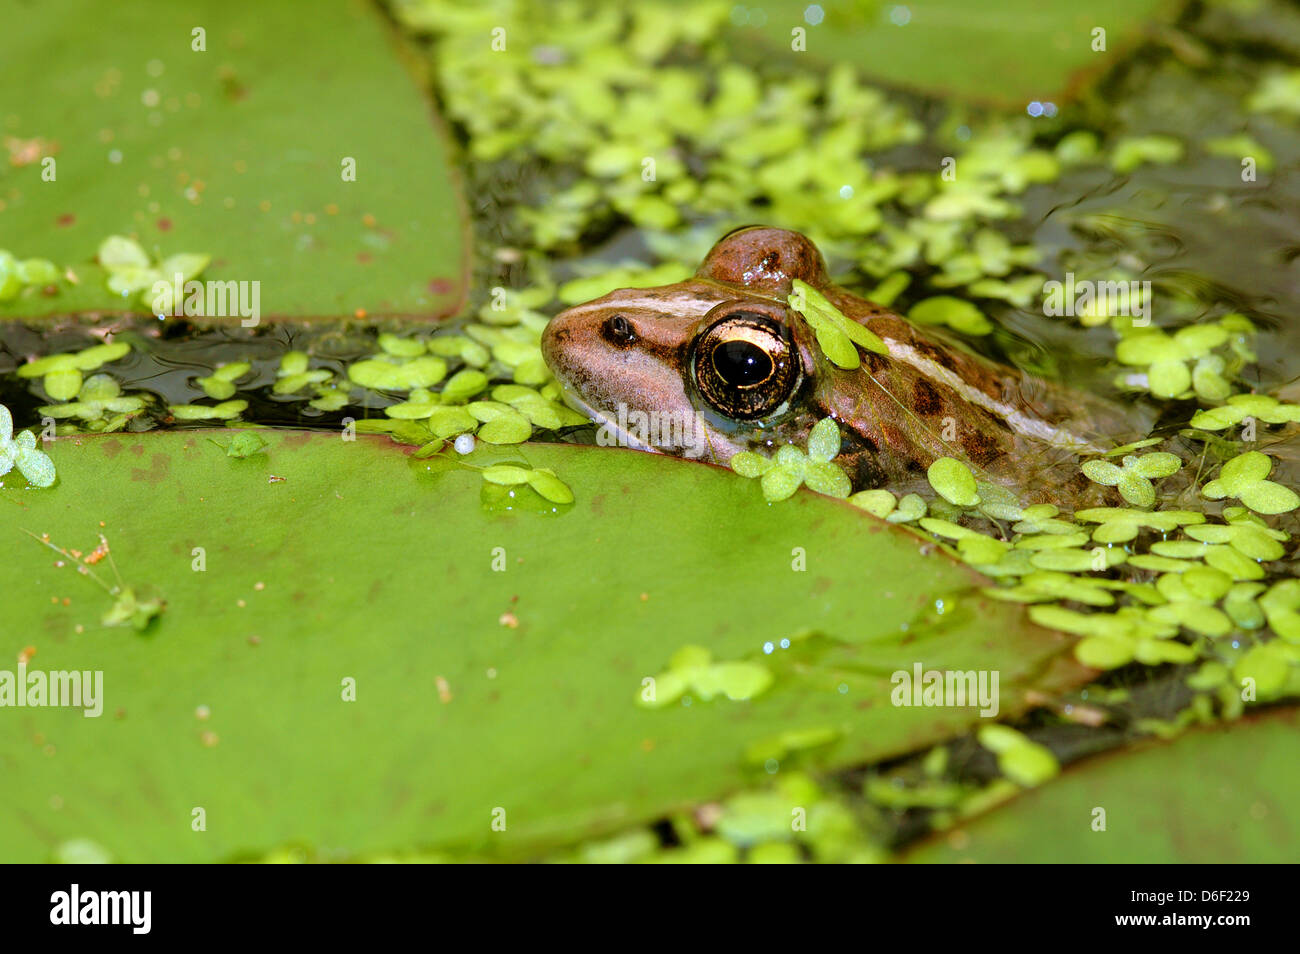 Rana levantina, Hadera frog floating in the water Stock Photo